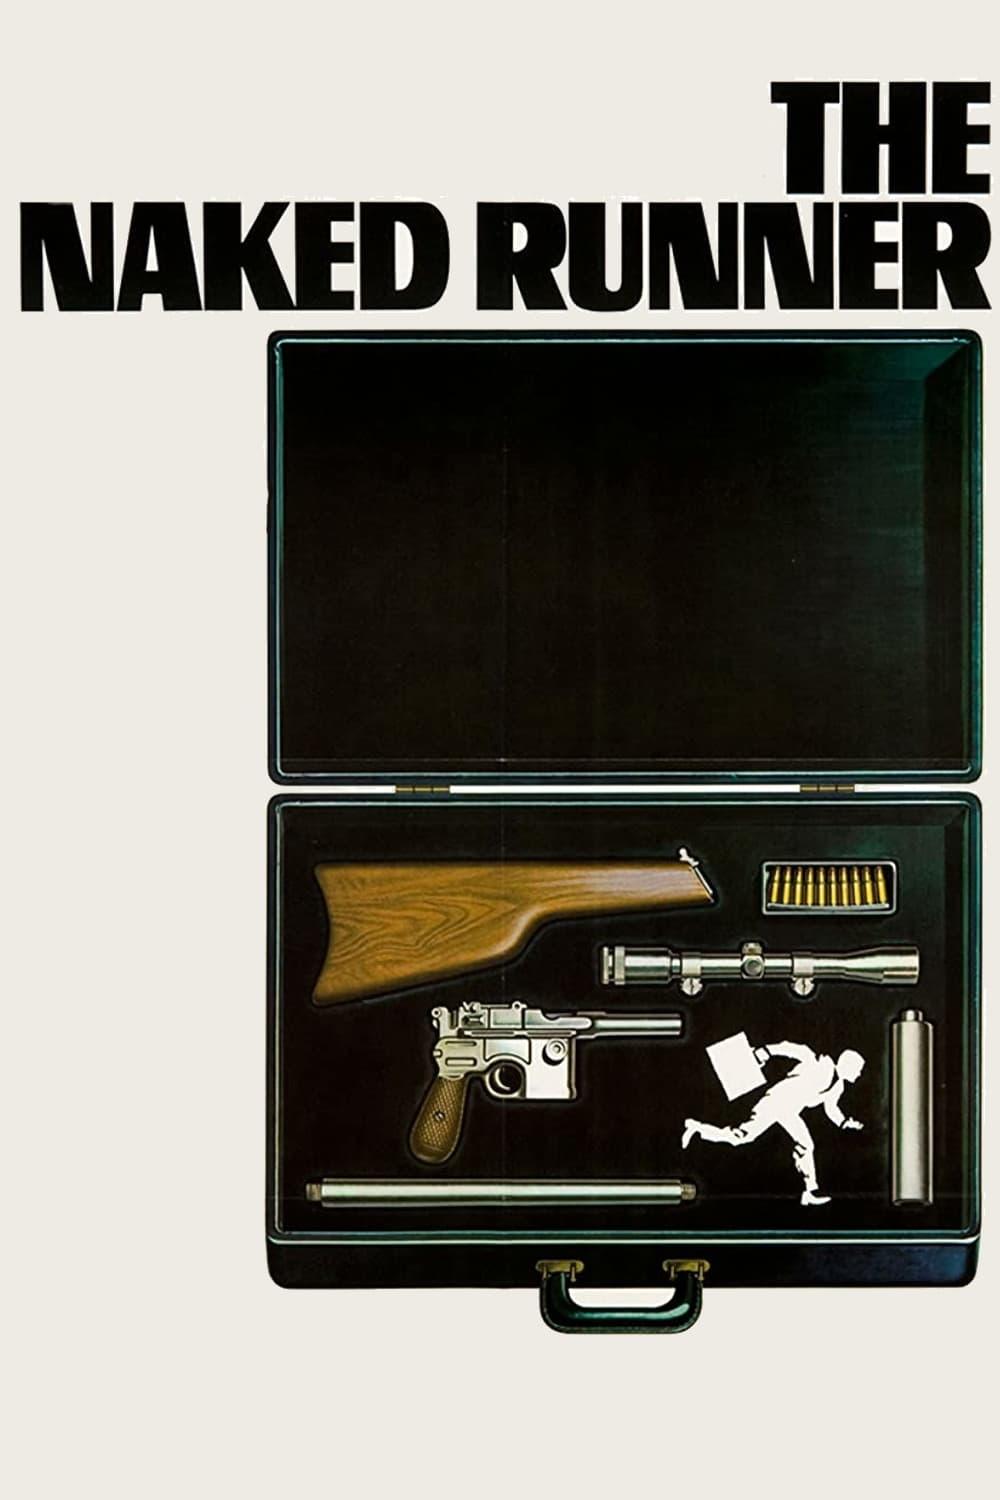 The Naked Runner poster